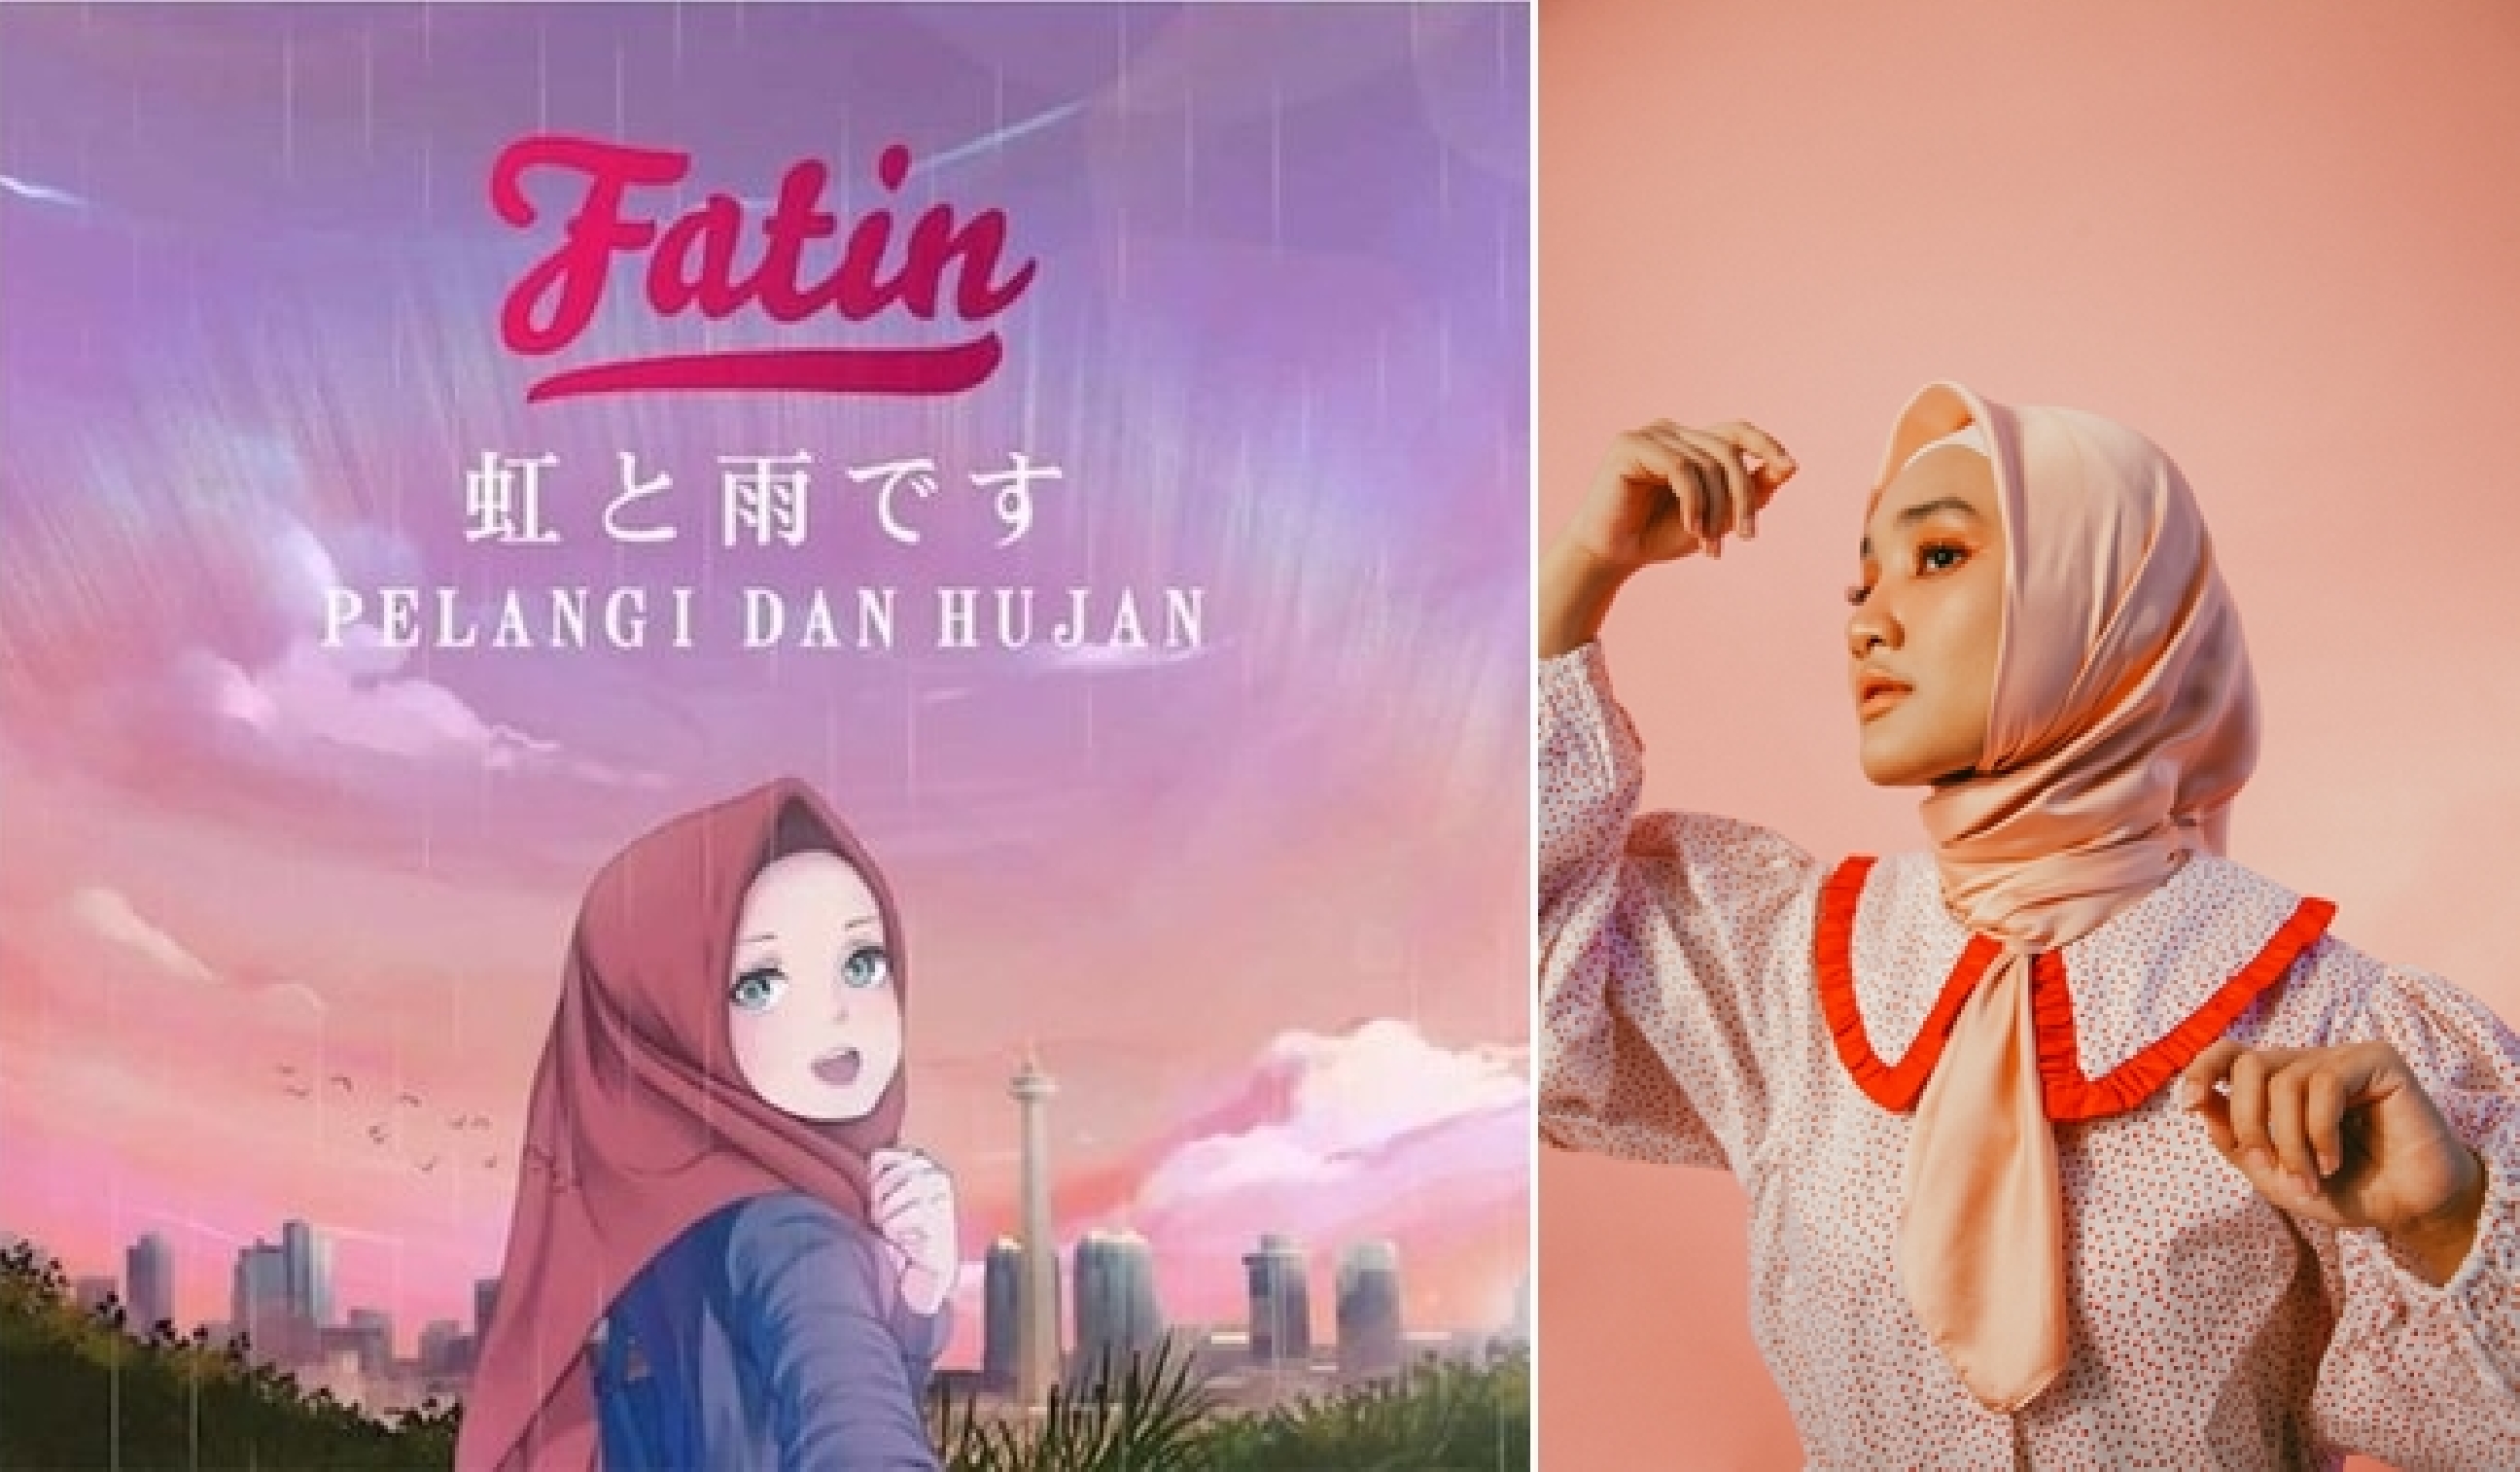 7 Fakta single terbaru Fatin yang bernuansa city pop Jepang